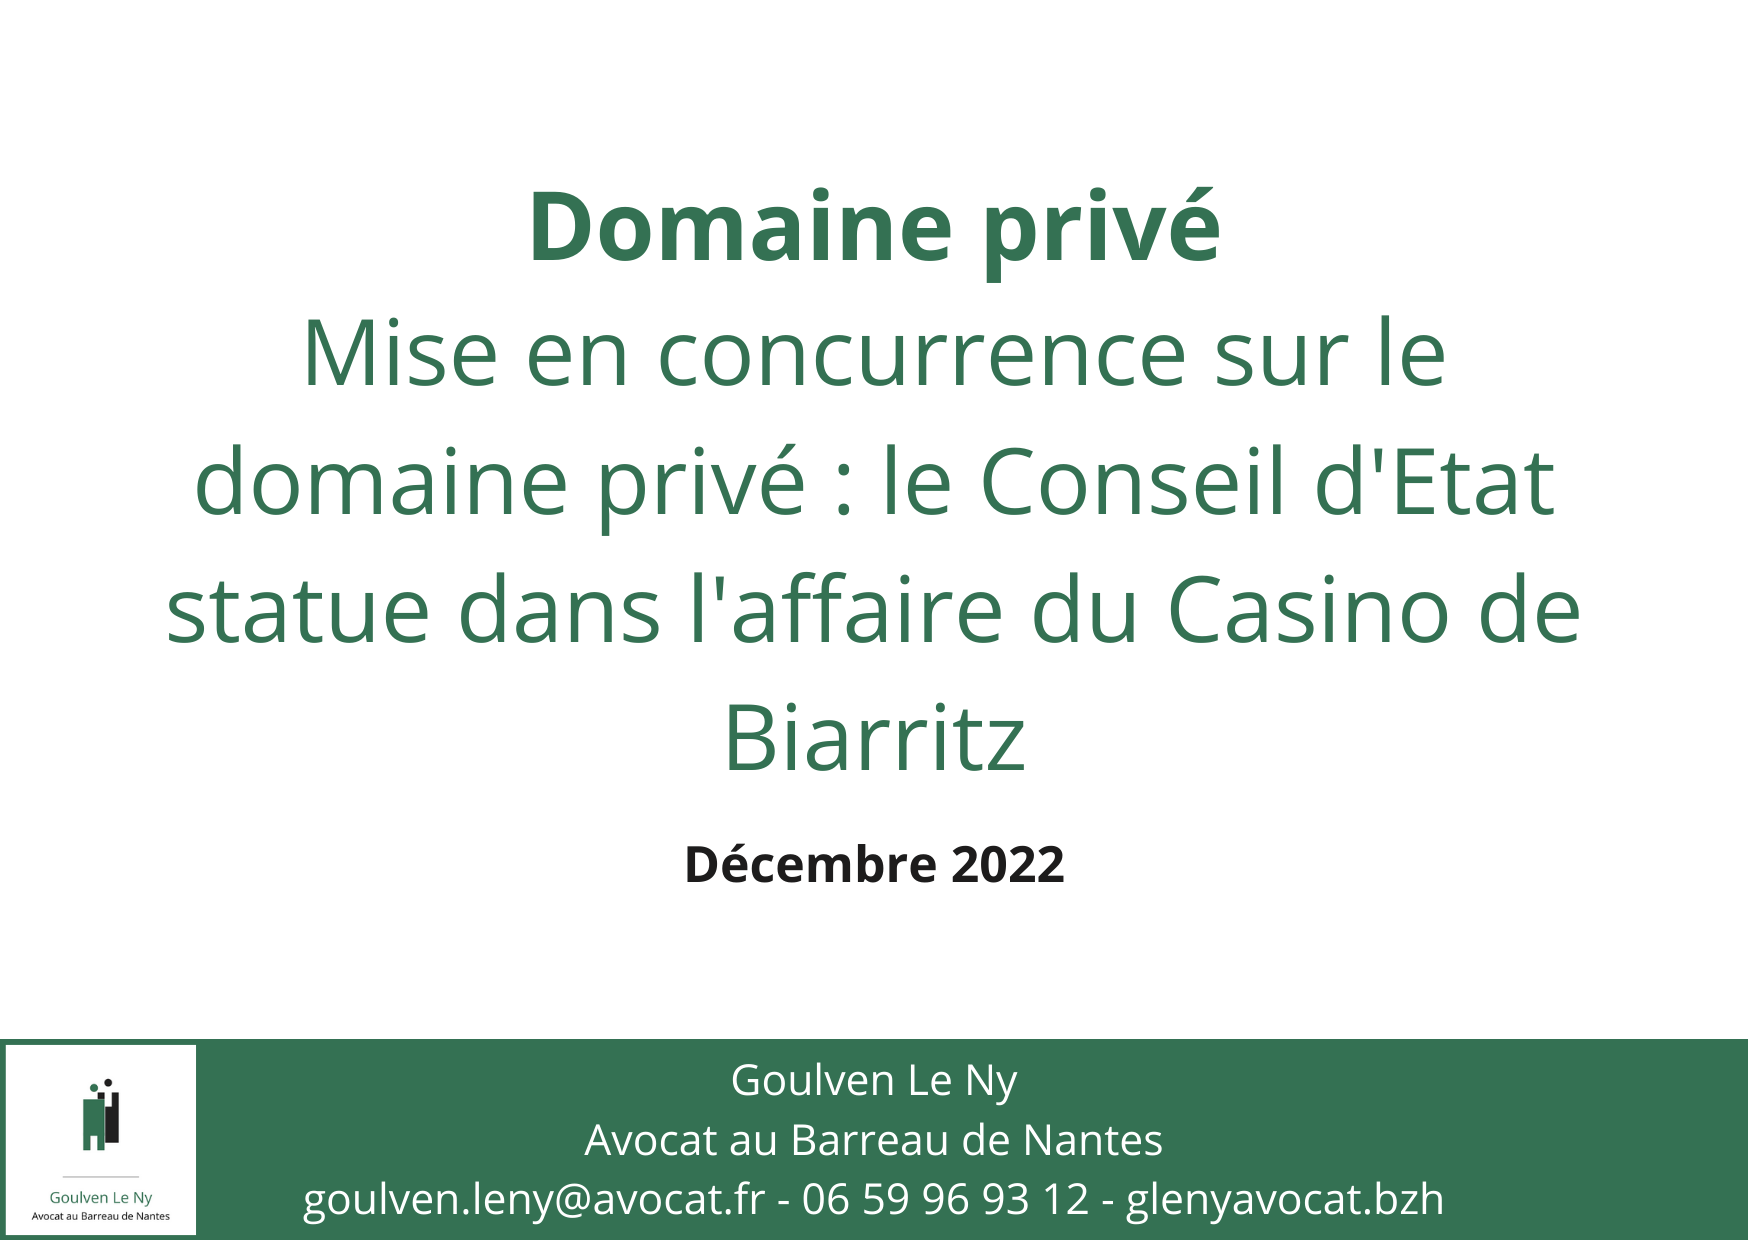 Mise en concurrence sur le domaine privé : le Conseil d'Etat statue dans l'affaire du Casino de Biarritz